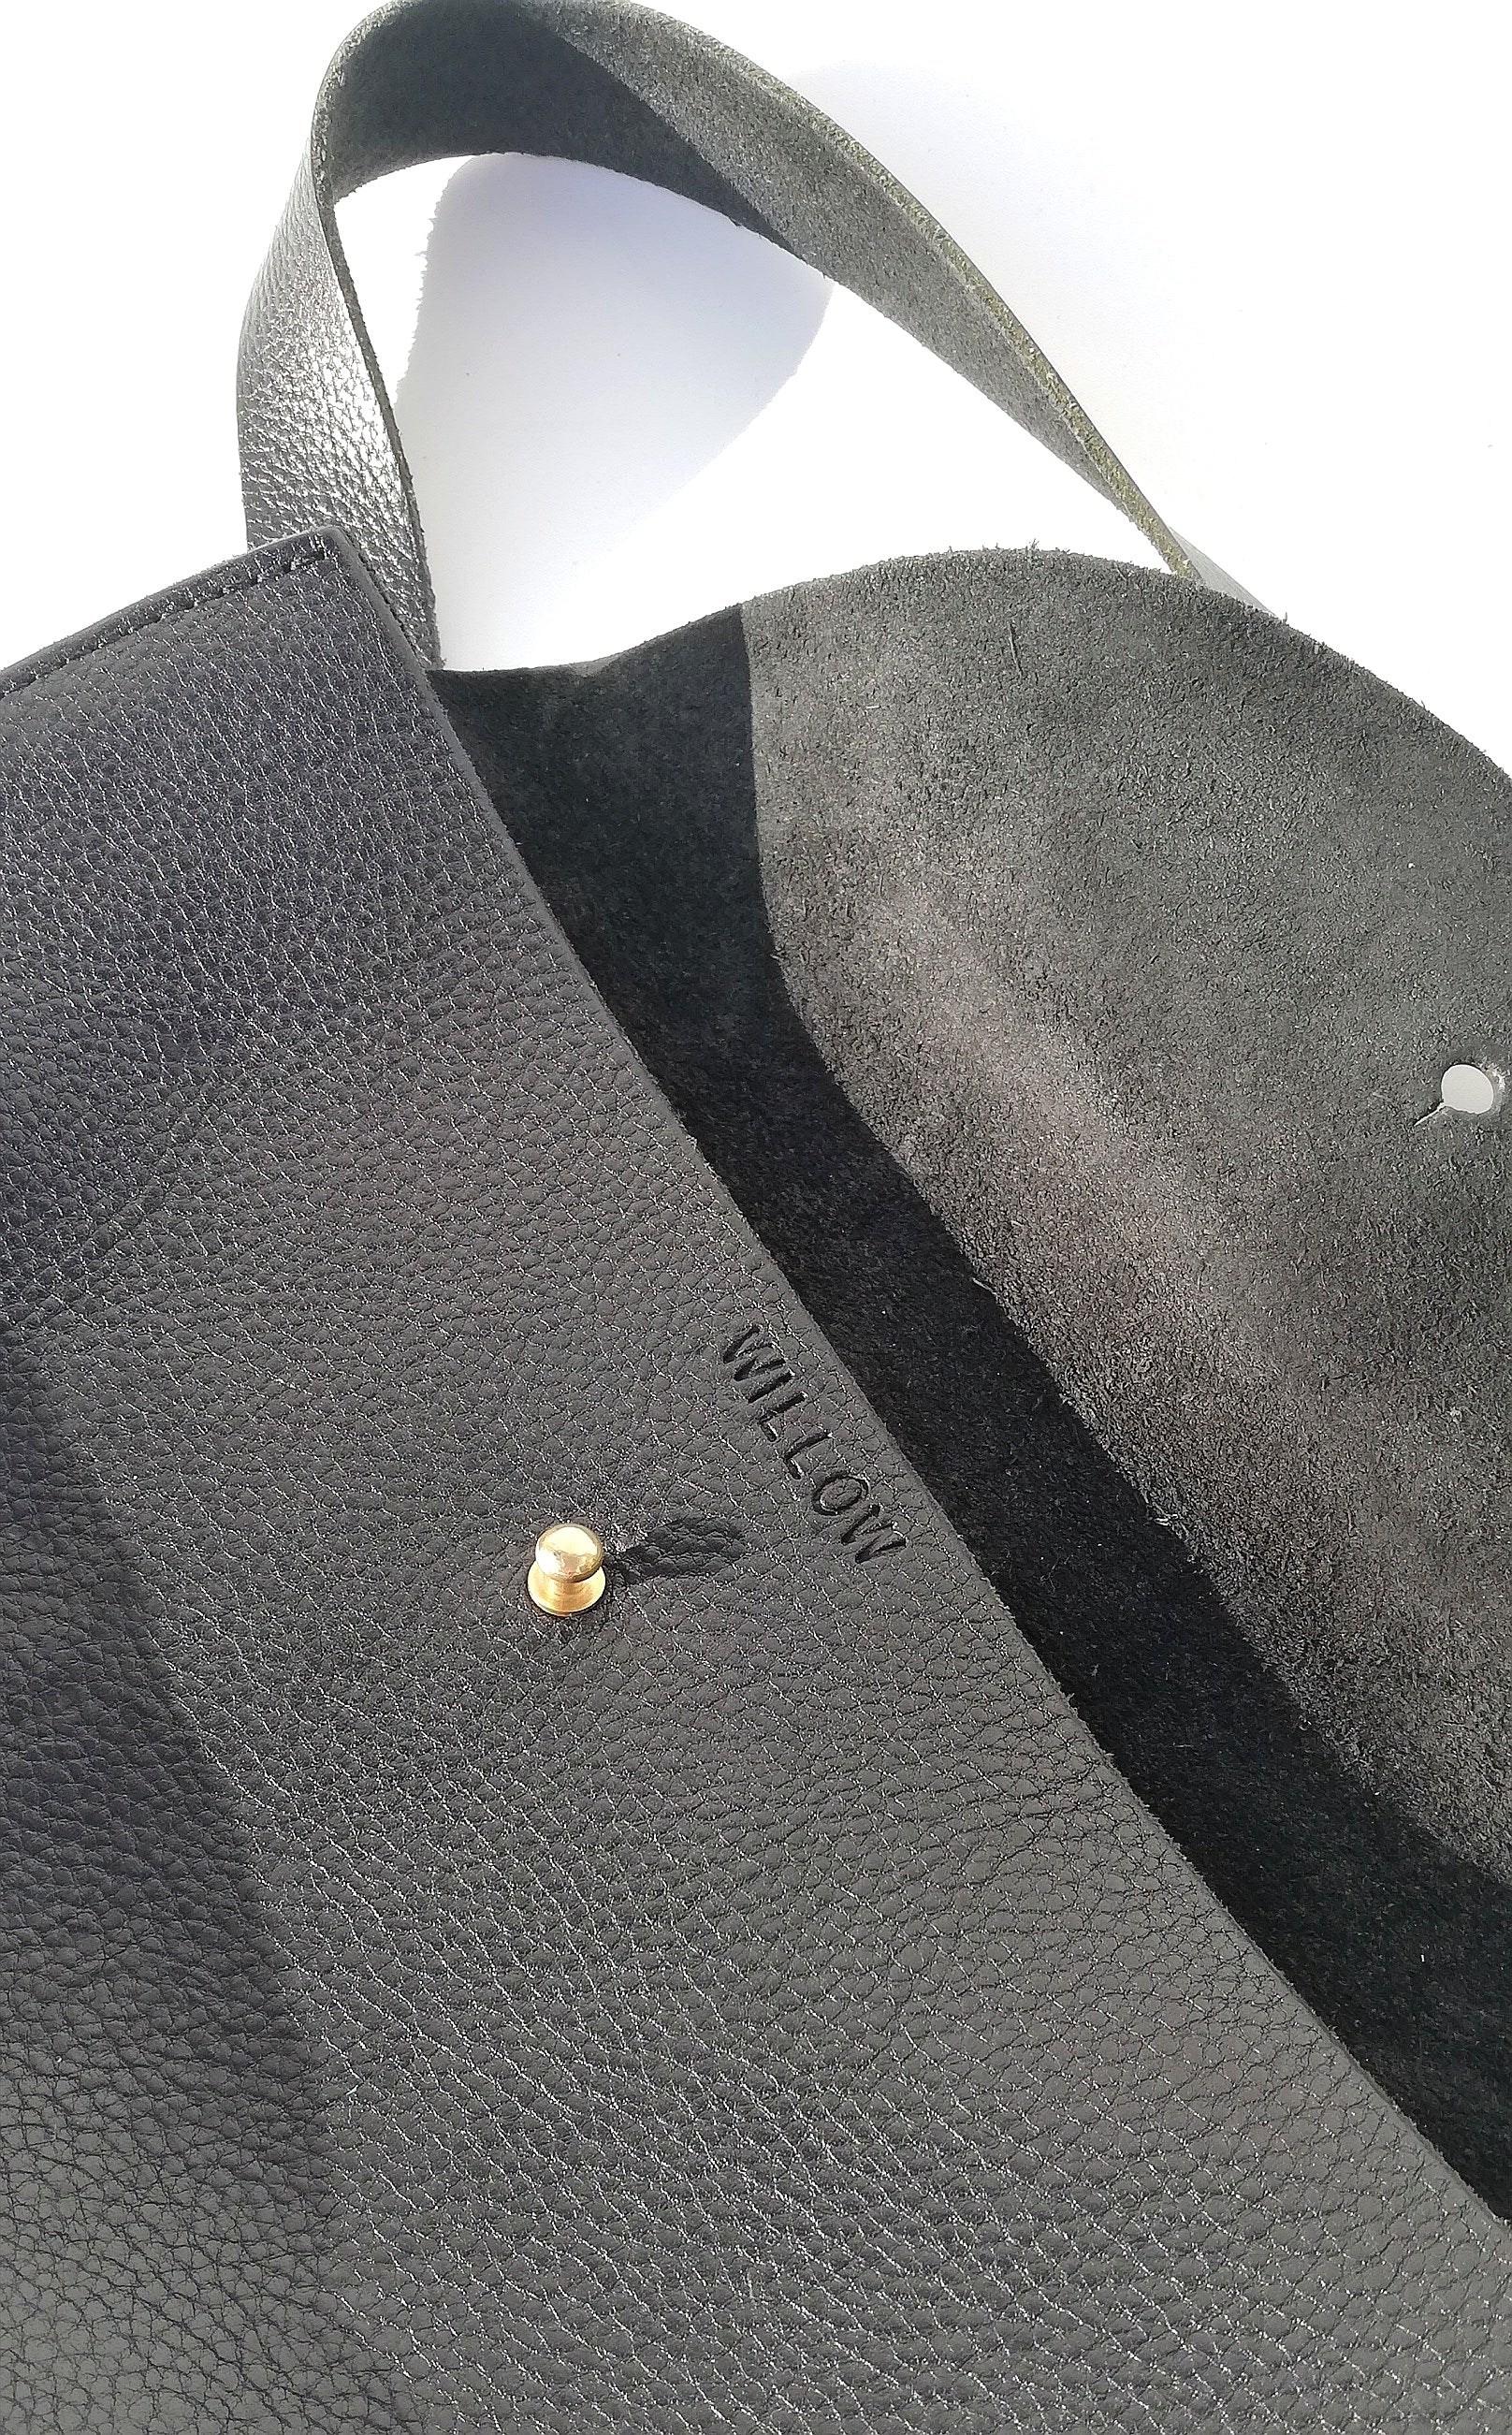 Handmade Leather Stitchless Satchel Shoulder Bag - Marbled